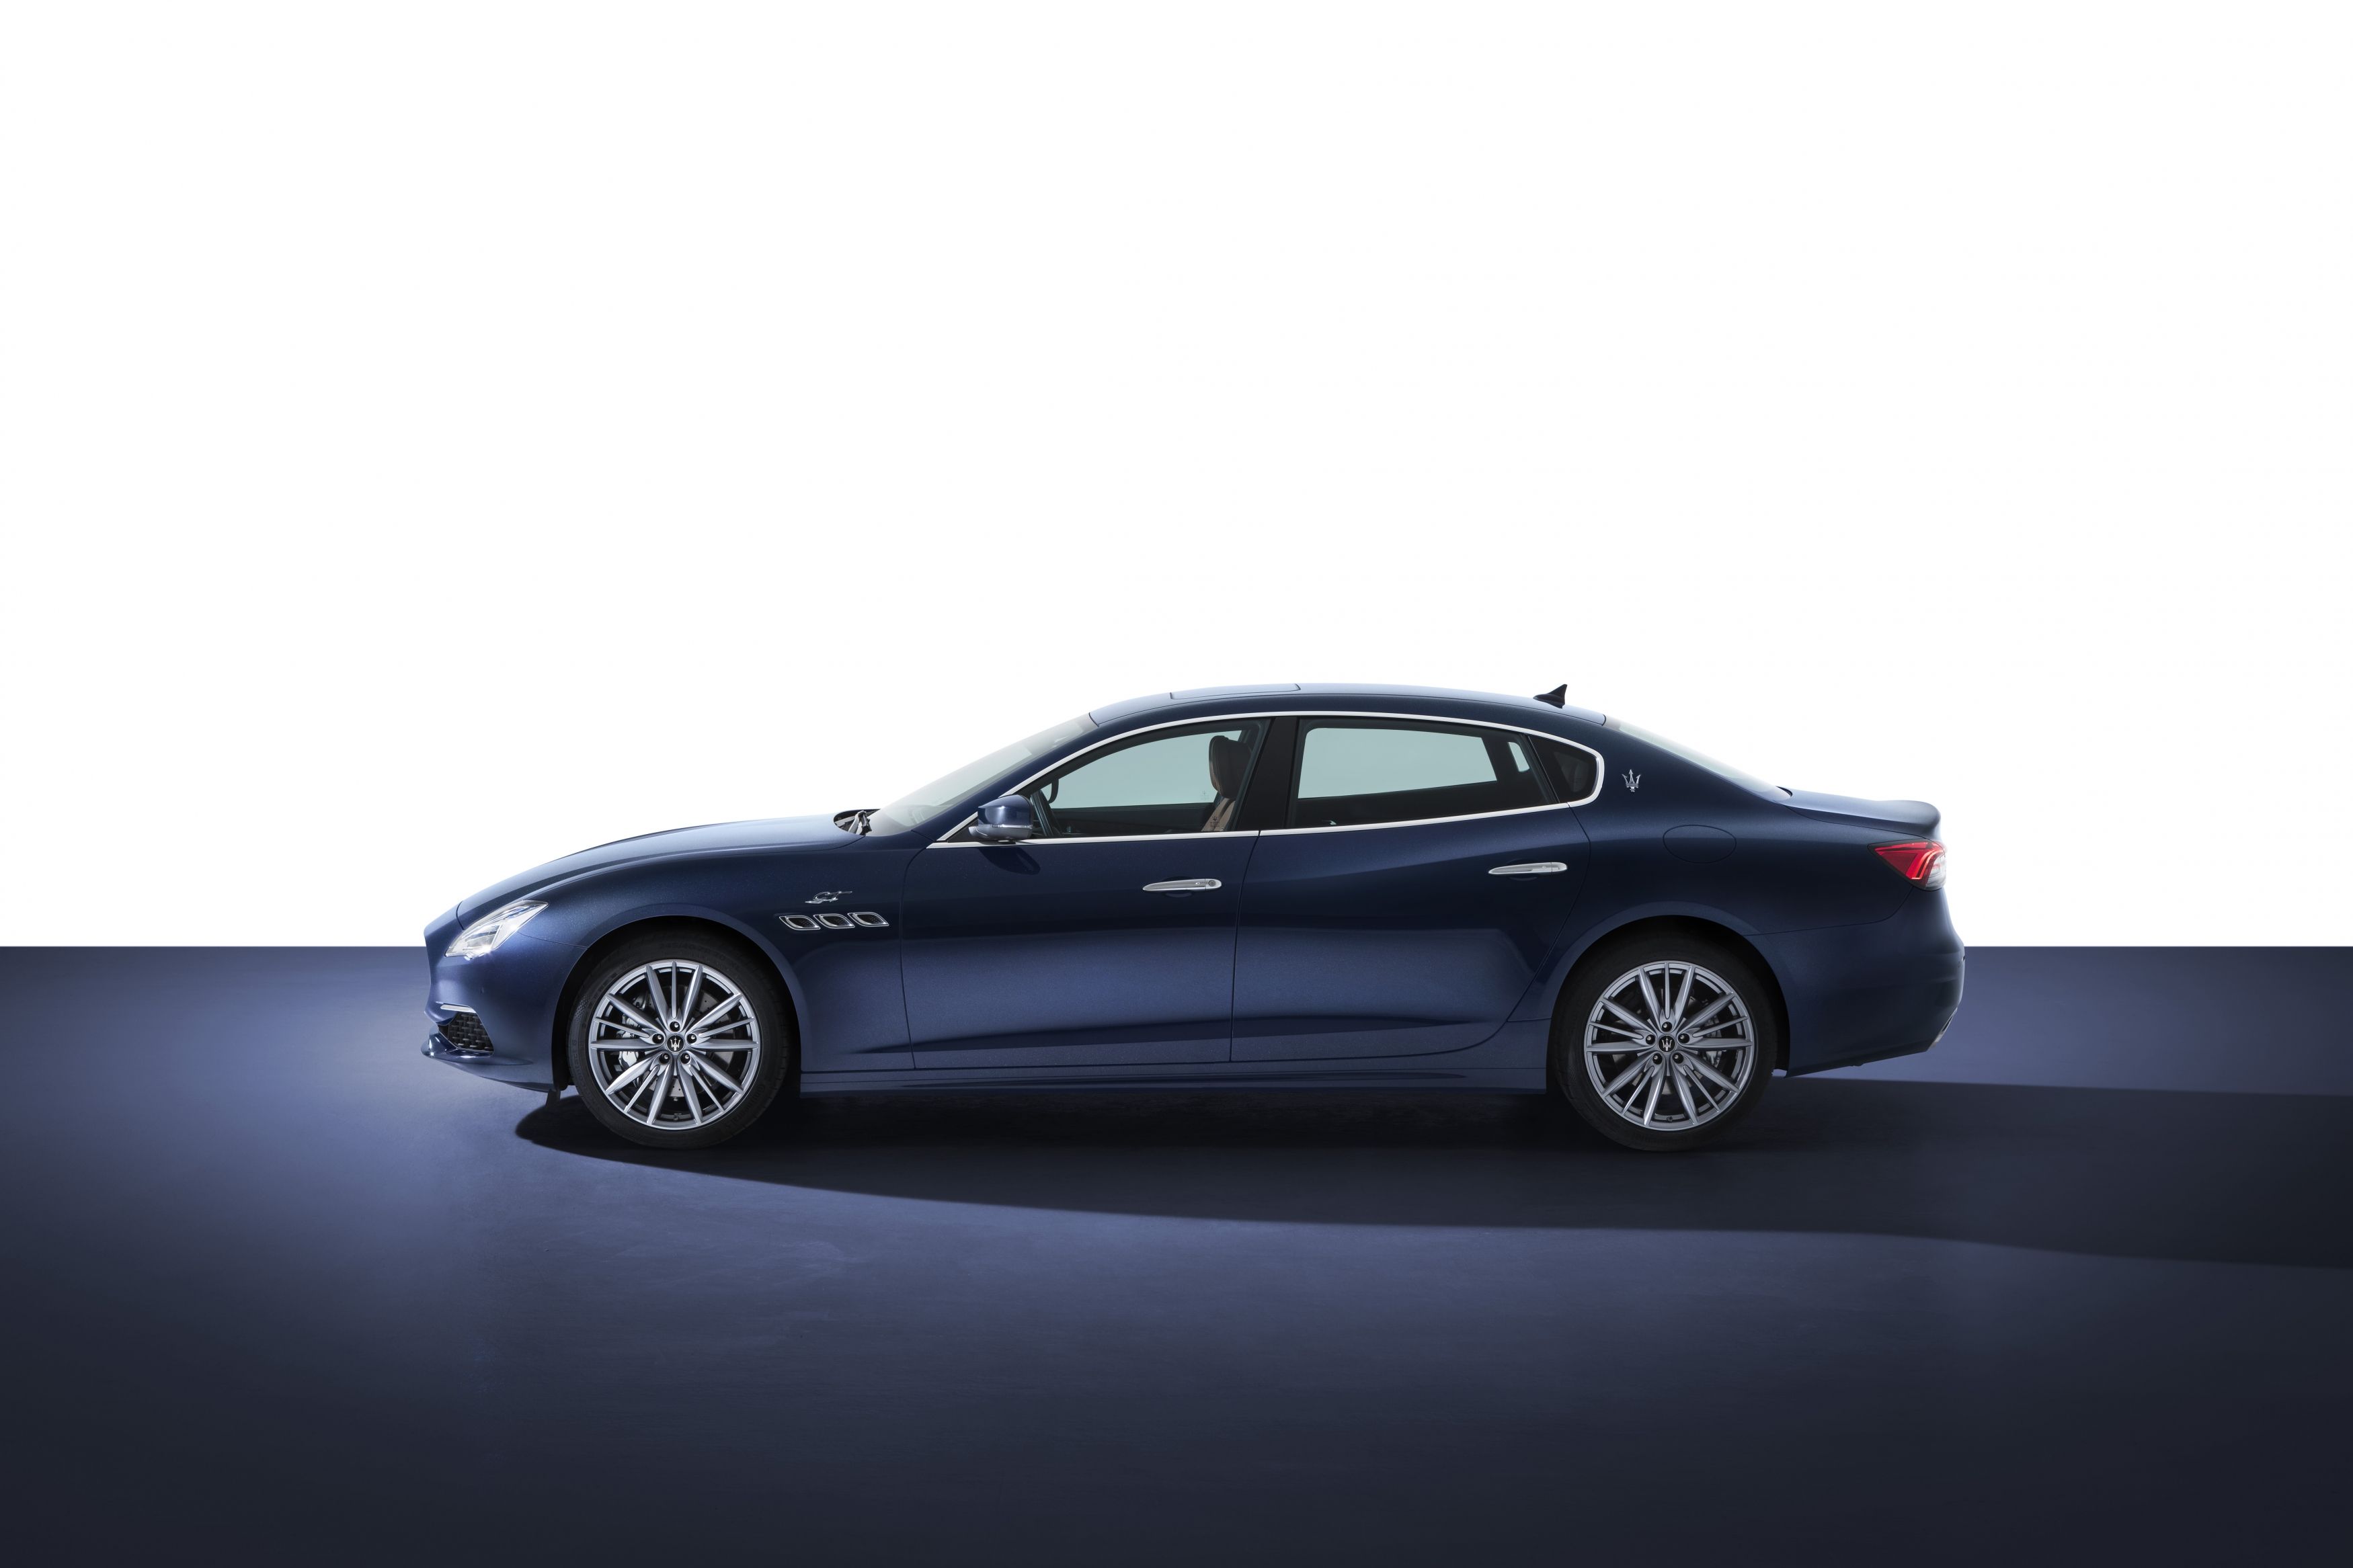 Maserati Quattroporte Gts Granlusso Wallpapers